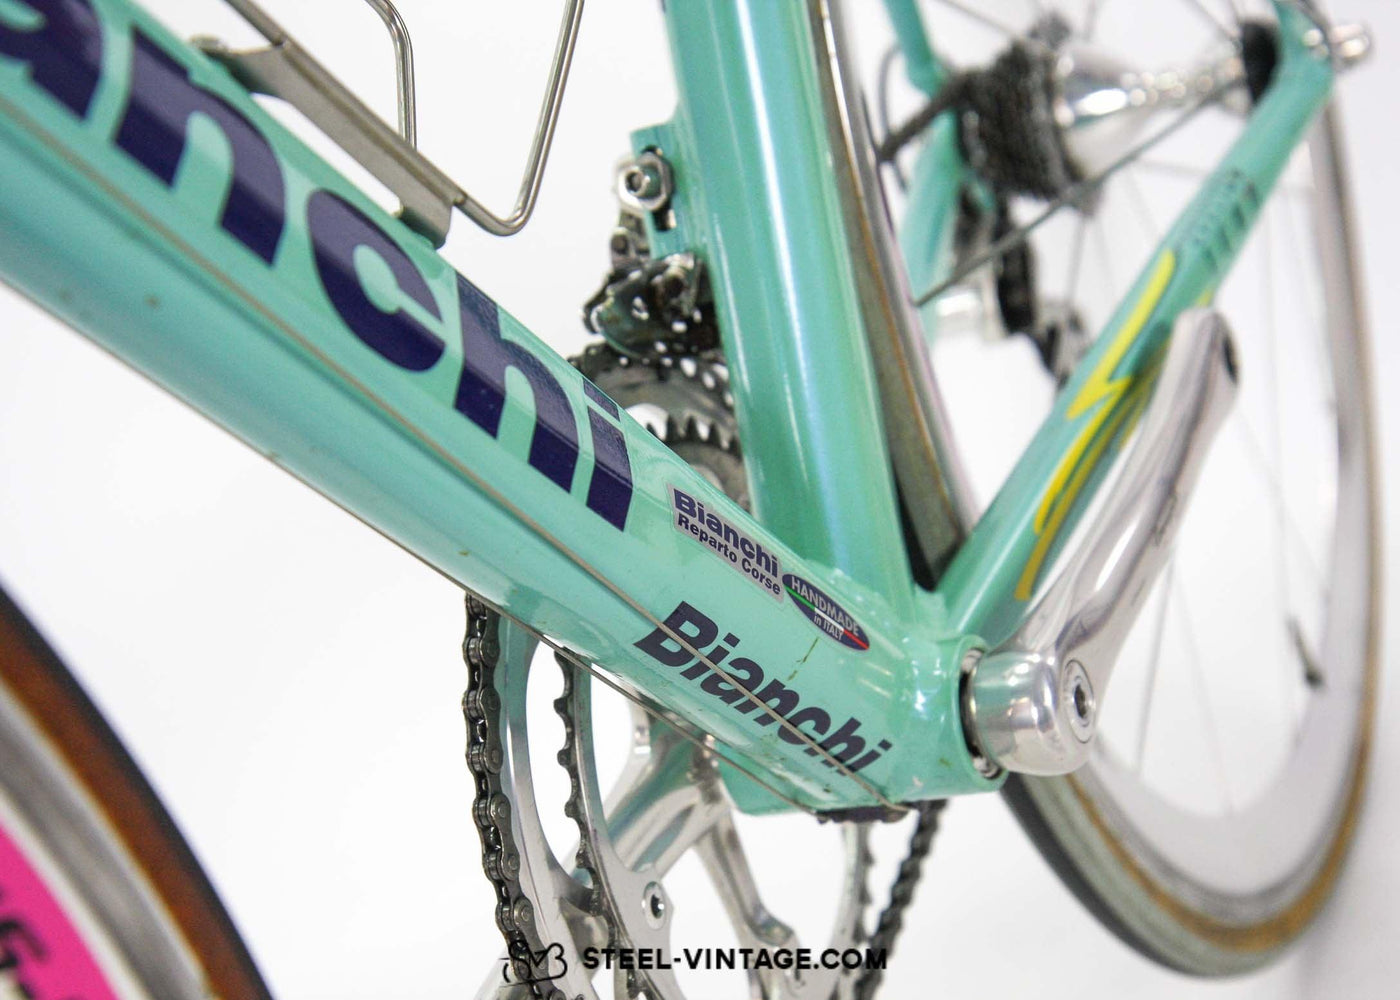 Bianchi Crono Mercatone Uno Team Bike Fabiano Fontanelli - Steel Vintage Bikes